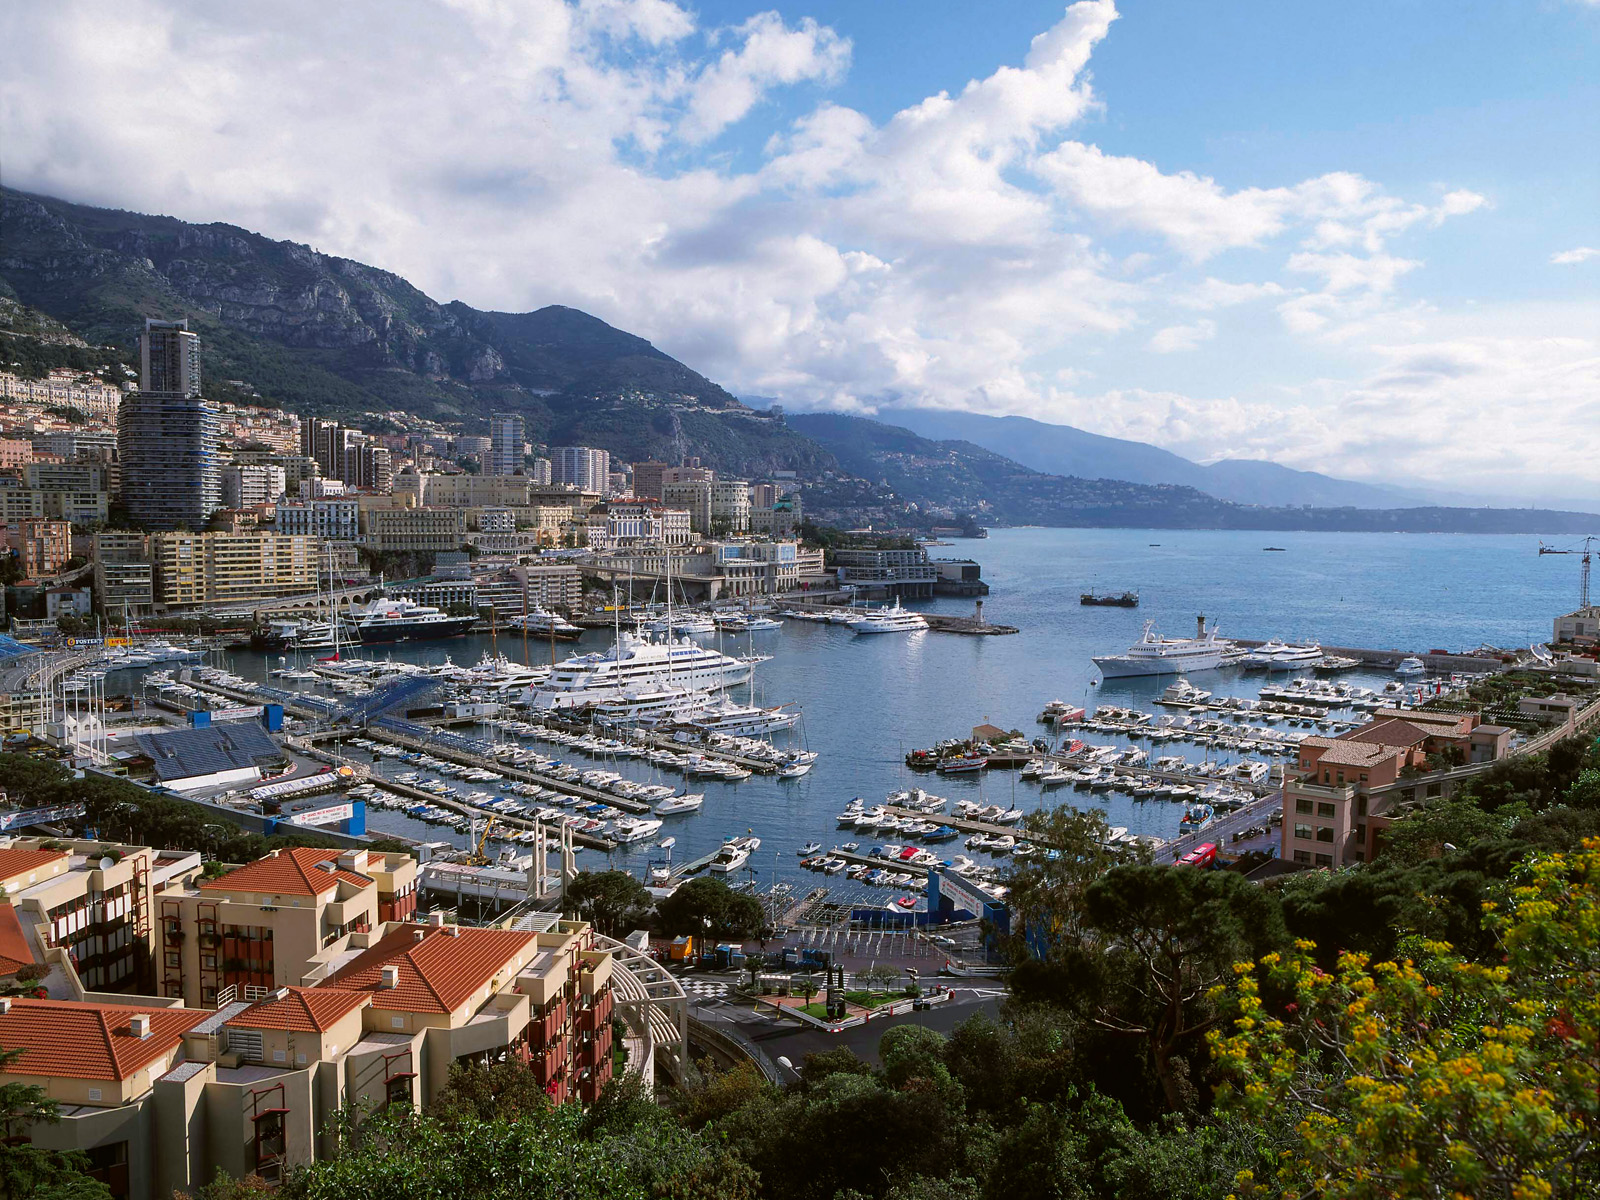 Monte Carlo - pejzaż, fotografia podróżnicza